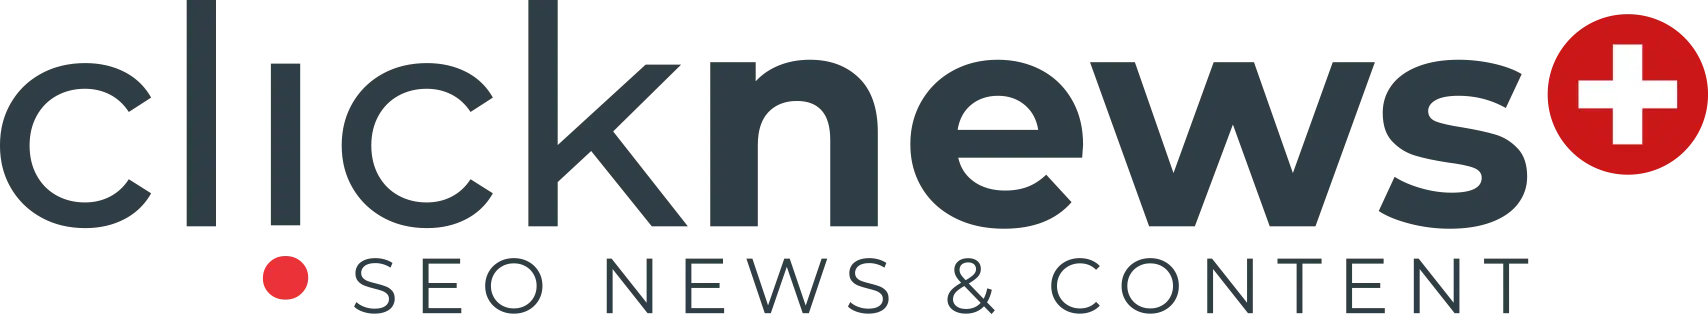 logo clicknews